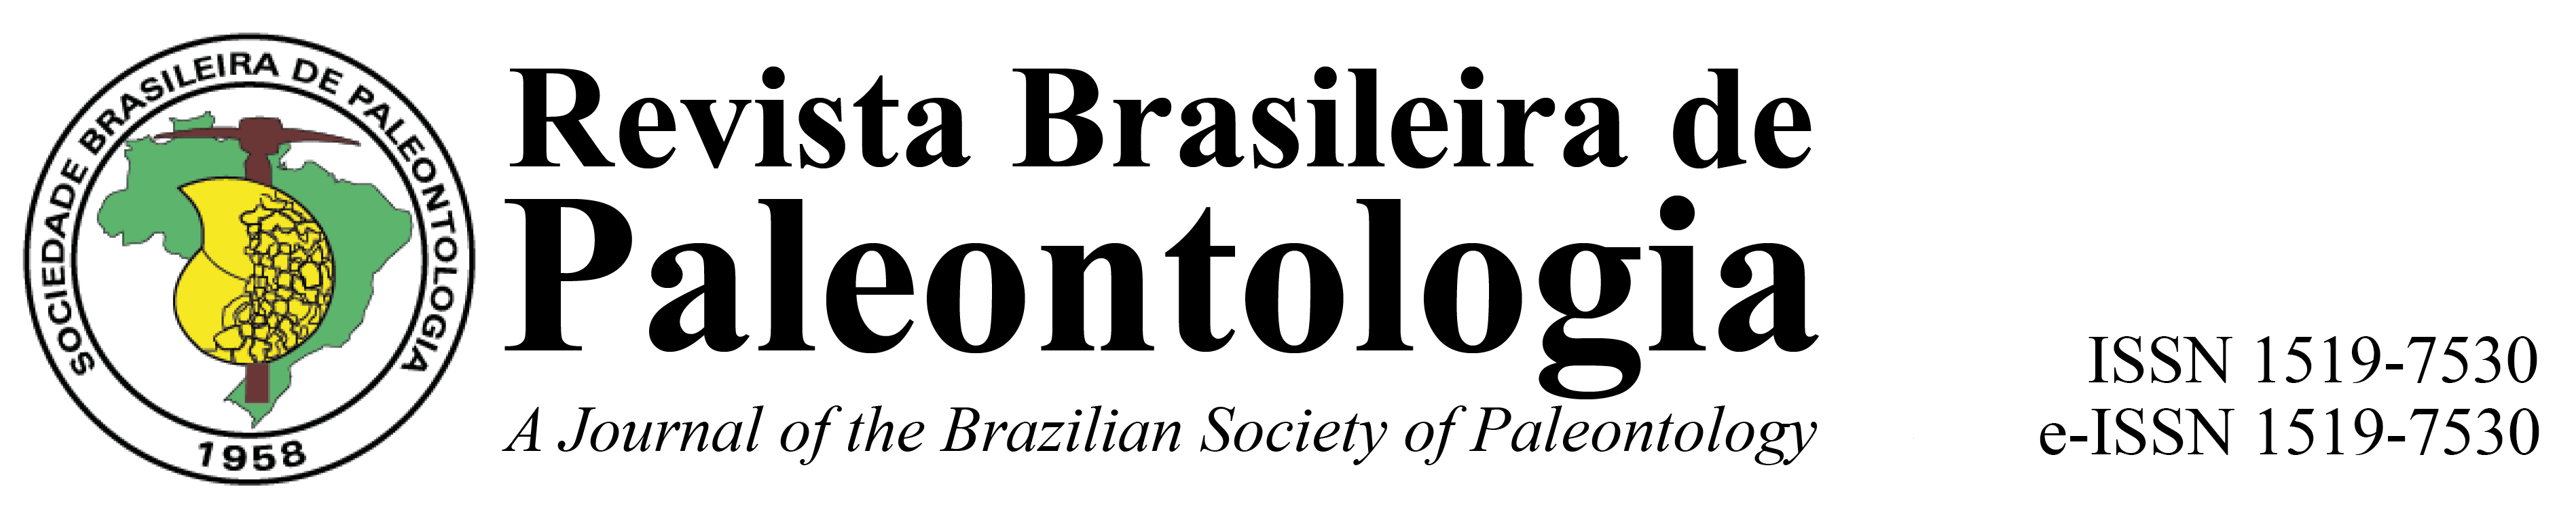 Revista Brasileira de Paleontologia